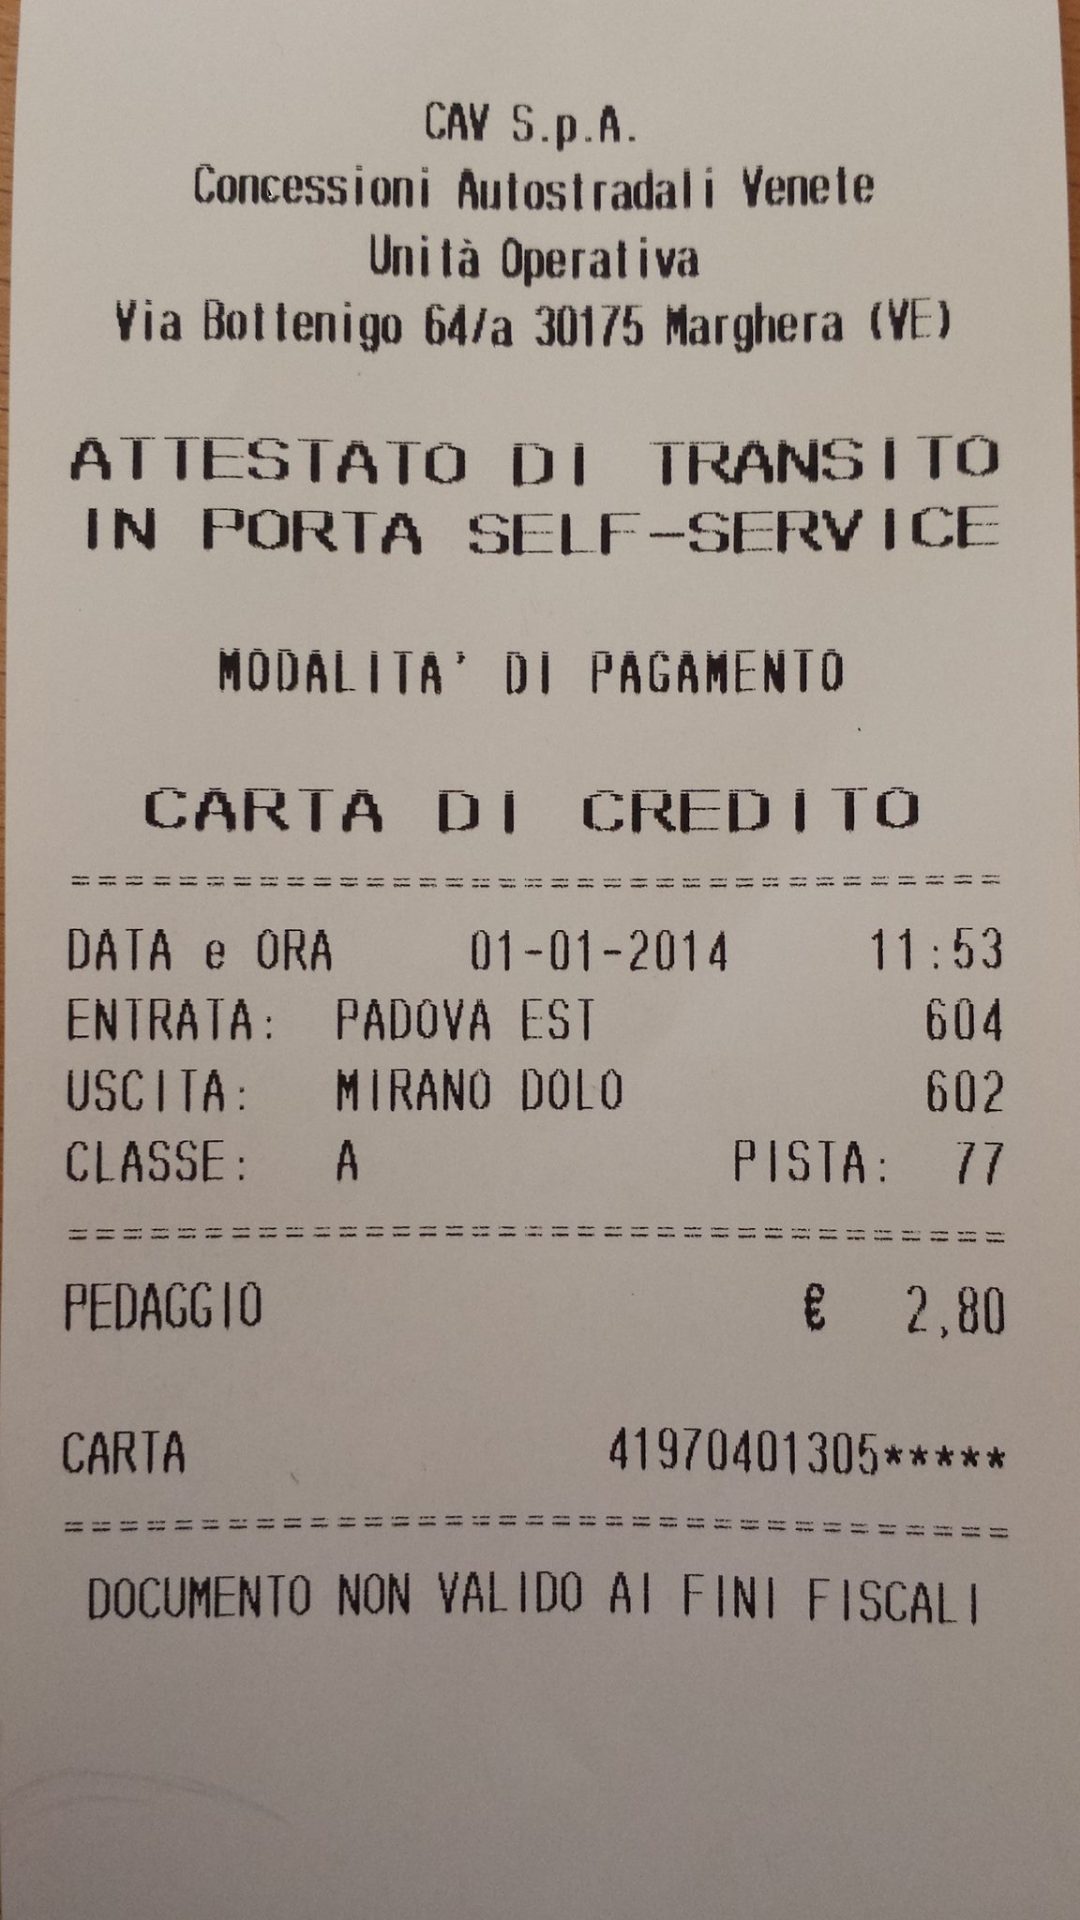 Padova-Dolo aumento choc:il pedaggio sale del 250% PADOVA - Da 0,80 a 2,80. Due